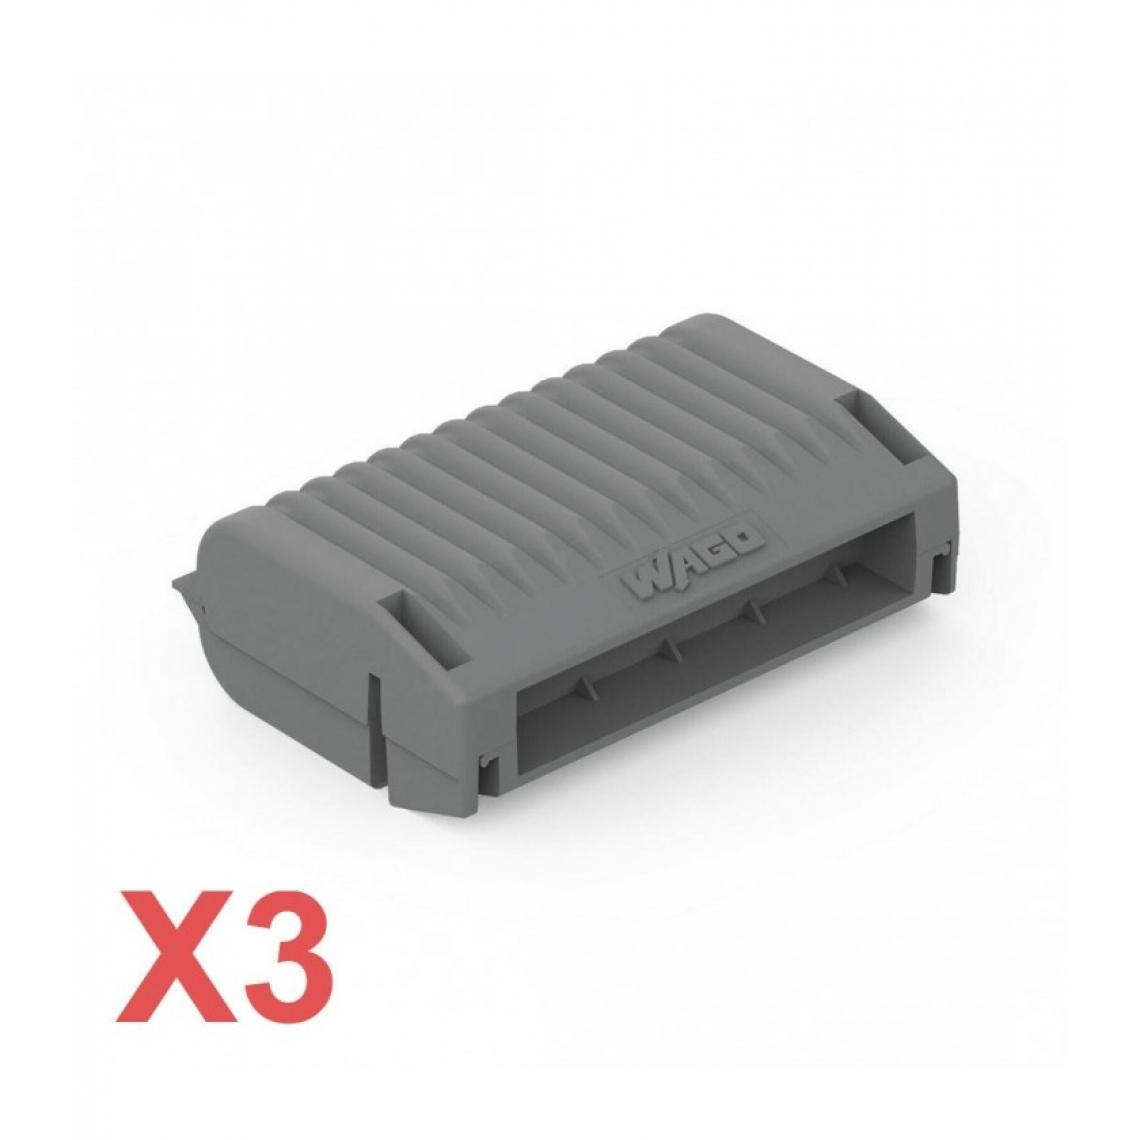 Wago - Lot de 3 WAGO Gelbox série 221 pour conducteurs - Dérivation avec gel - 2x73 - Borne 4 mm² max. - Taille 3 - Gris - Accessoires de câblage